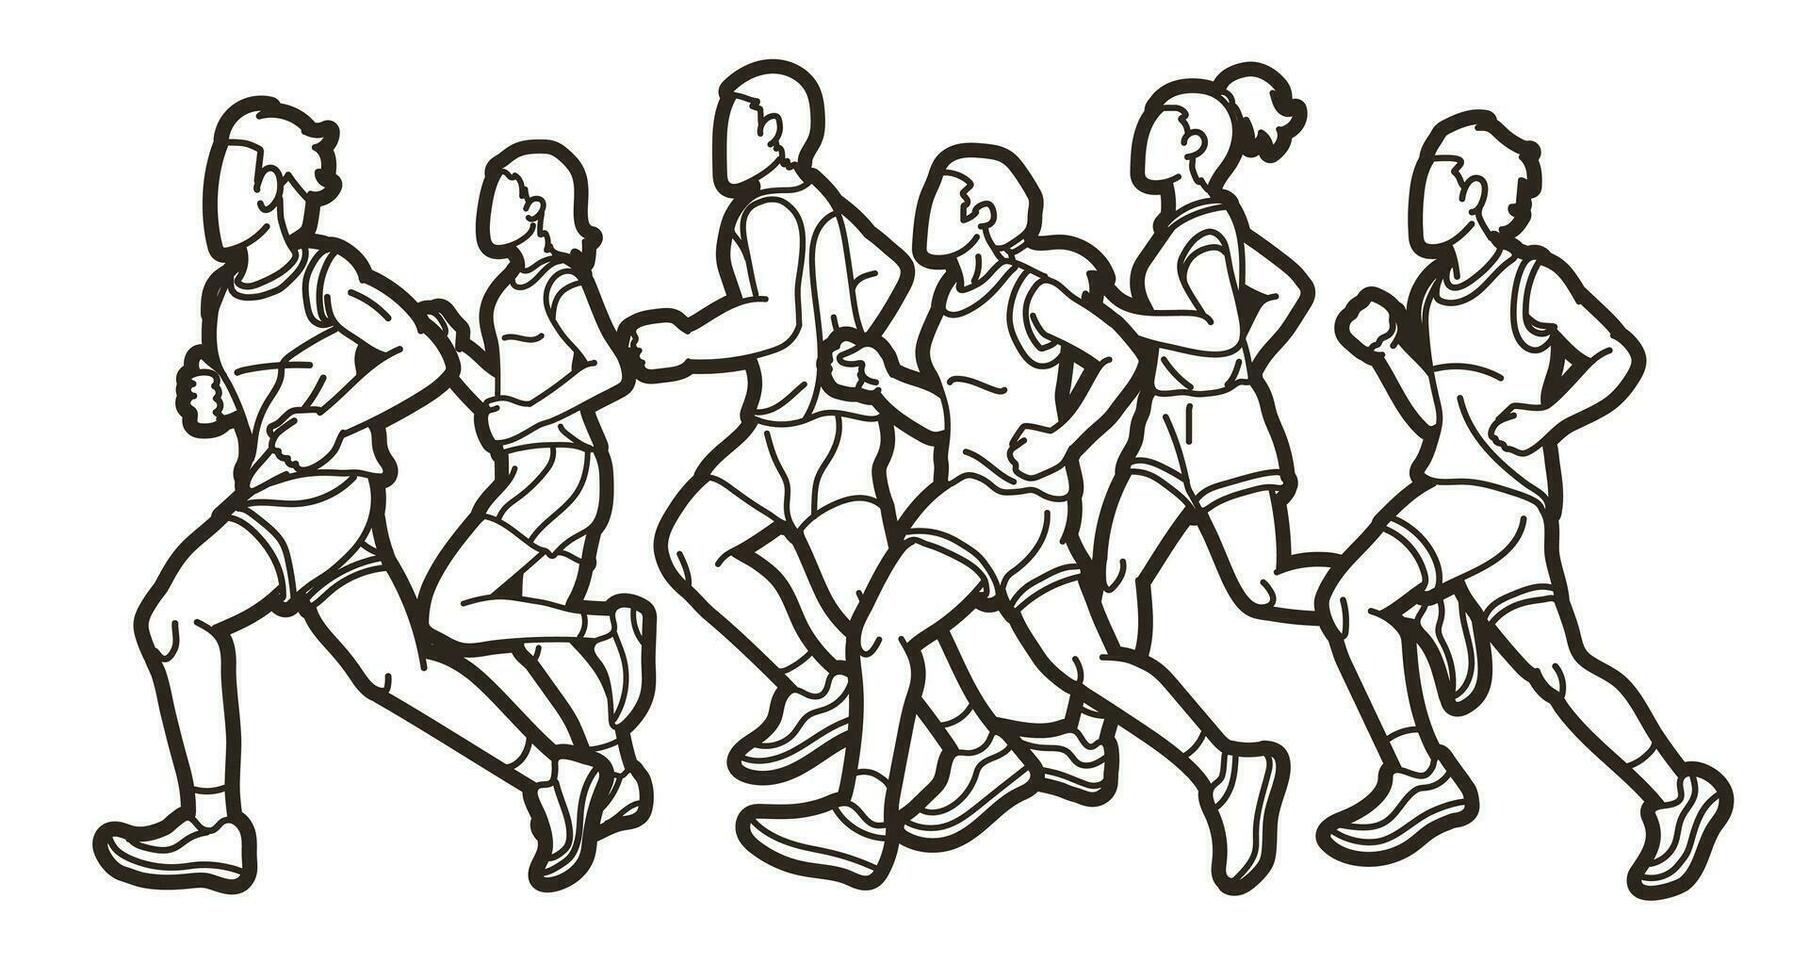 grupo de personas corriendo juntos dibujos animados deporte gráfico vector